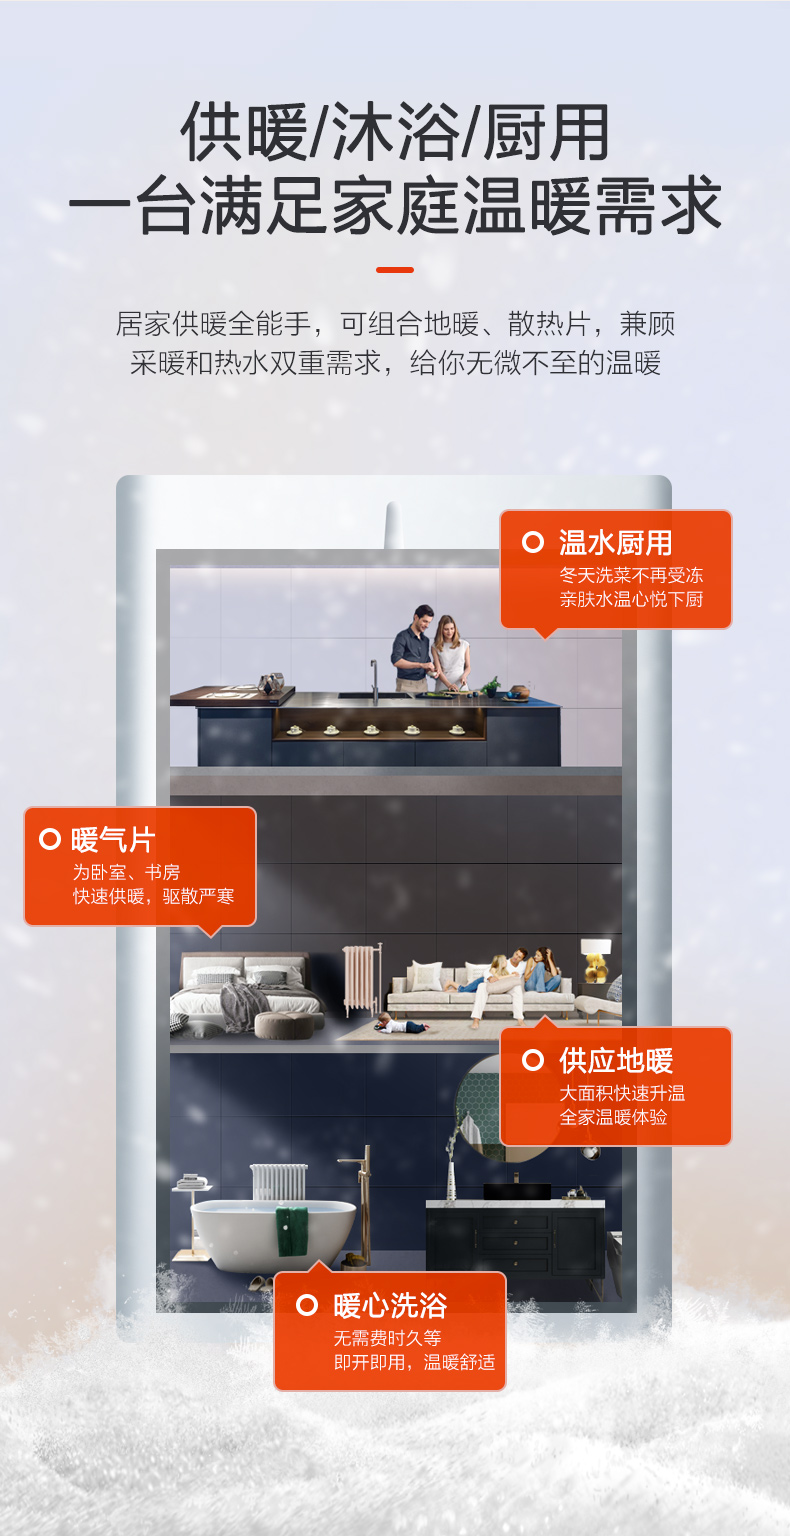 依玛艾罗迷你EOLO Mini 28kw壁挂炉产品特点